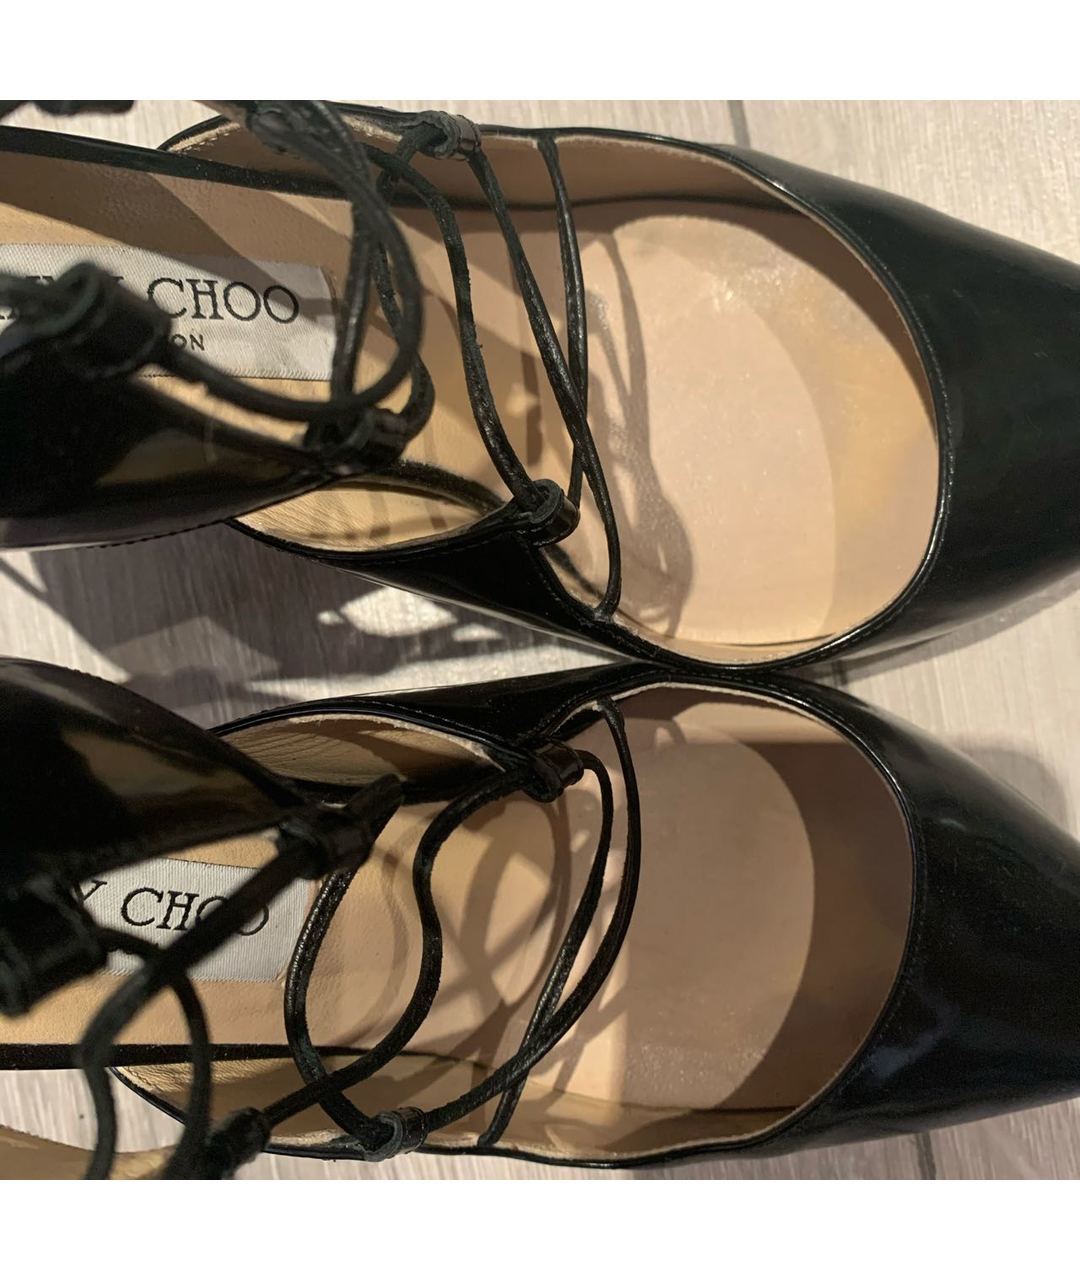 JIMMY CHOO Черные кожаные туфли, фото 7